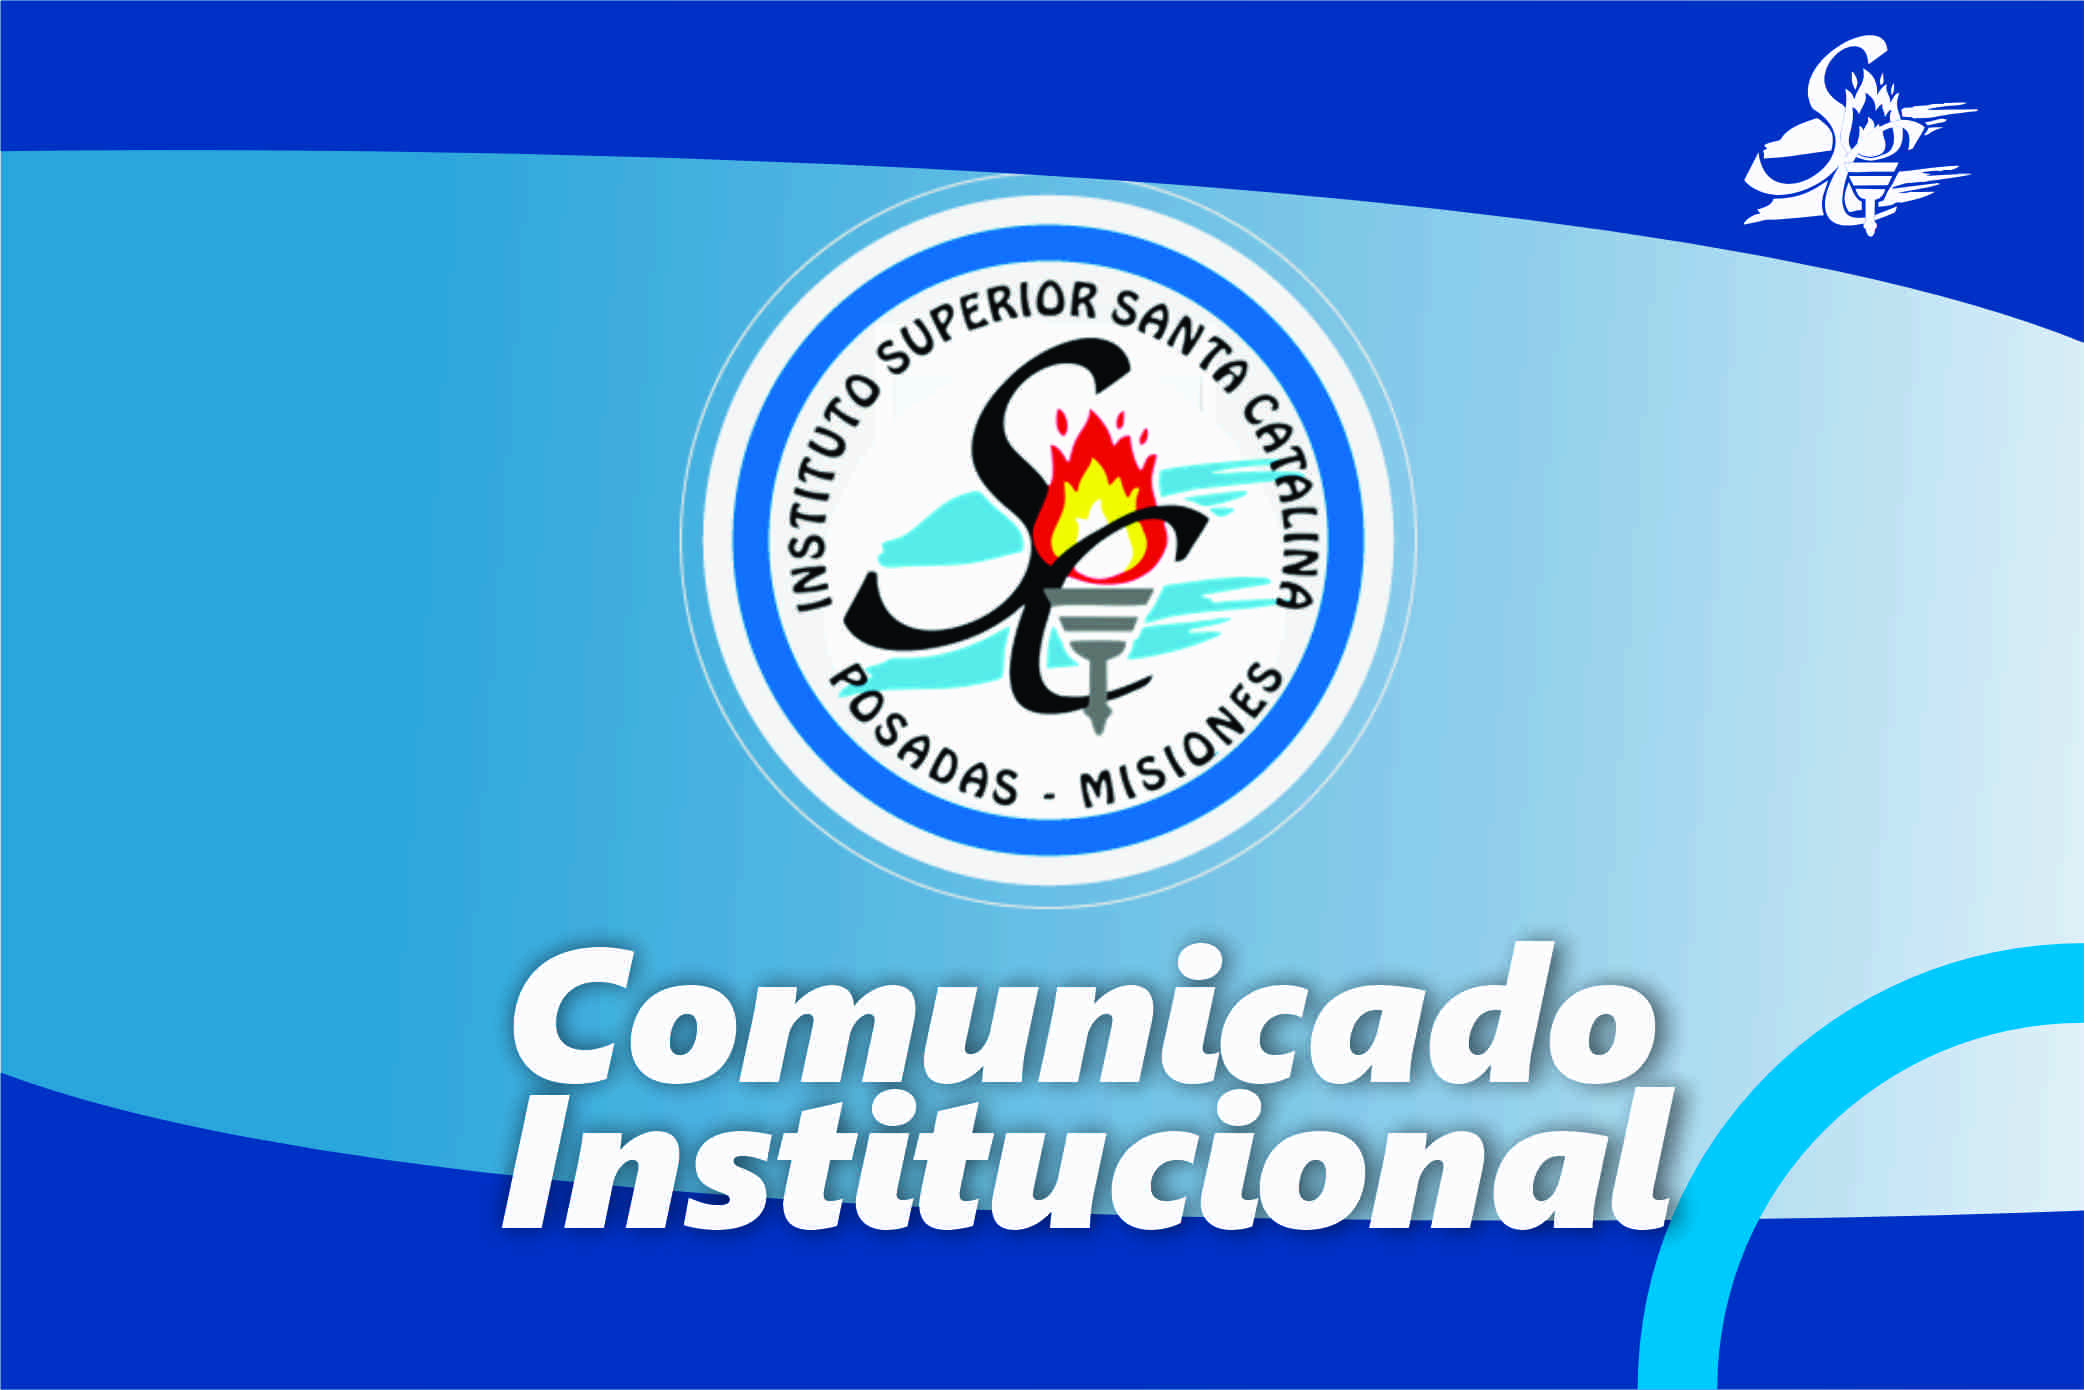 2084px x 1390px - Comunicado Institucional - ISSC